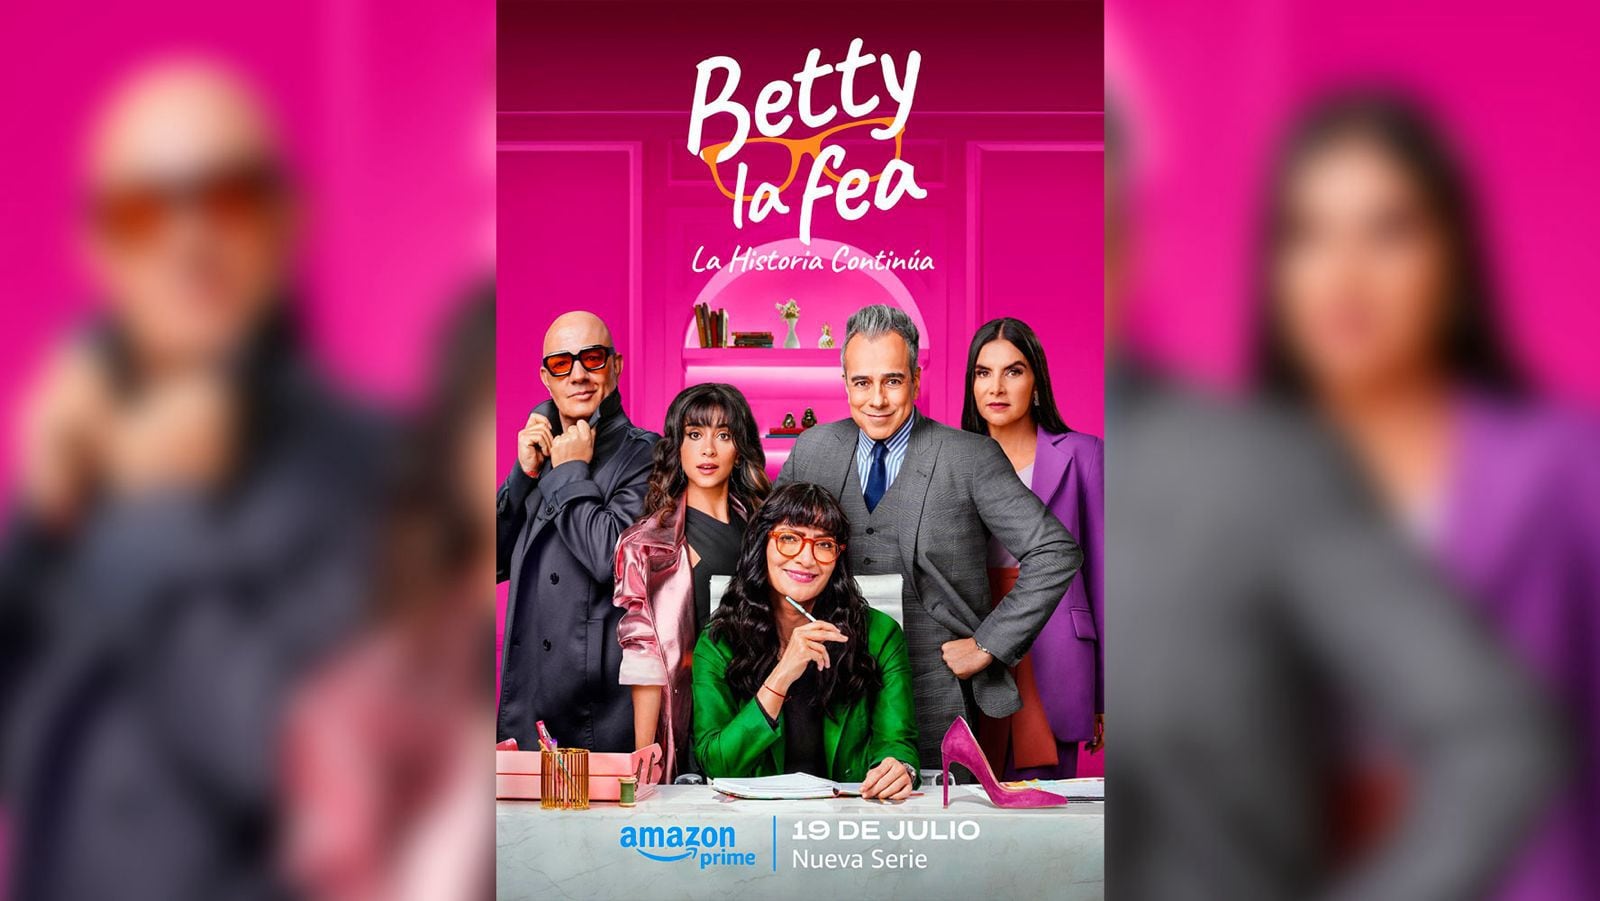 'Betty, la fea' tendrá el regreso de casi todo su cast original. (Foto: IMDb).